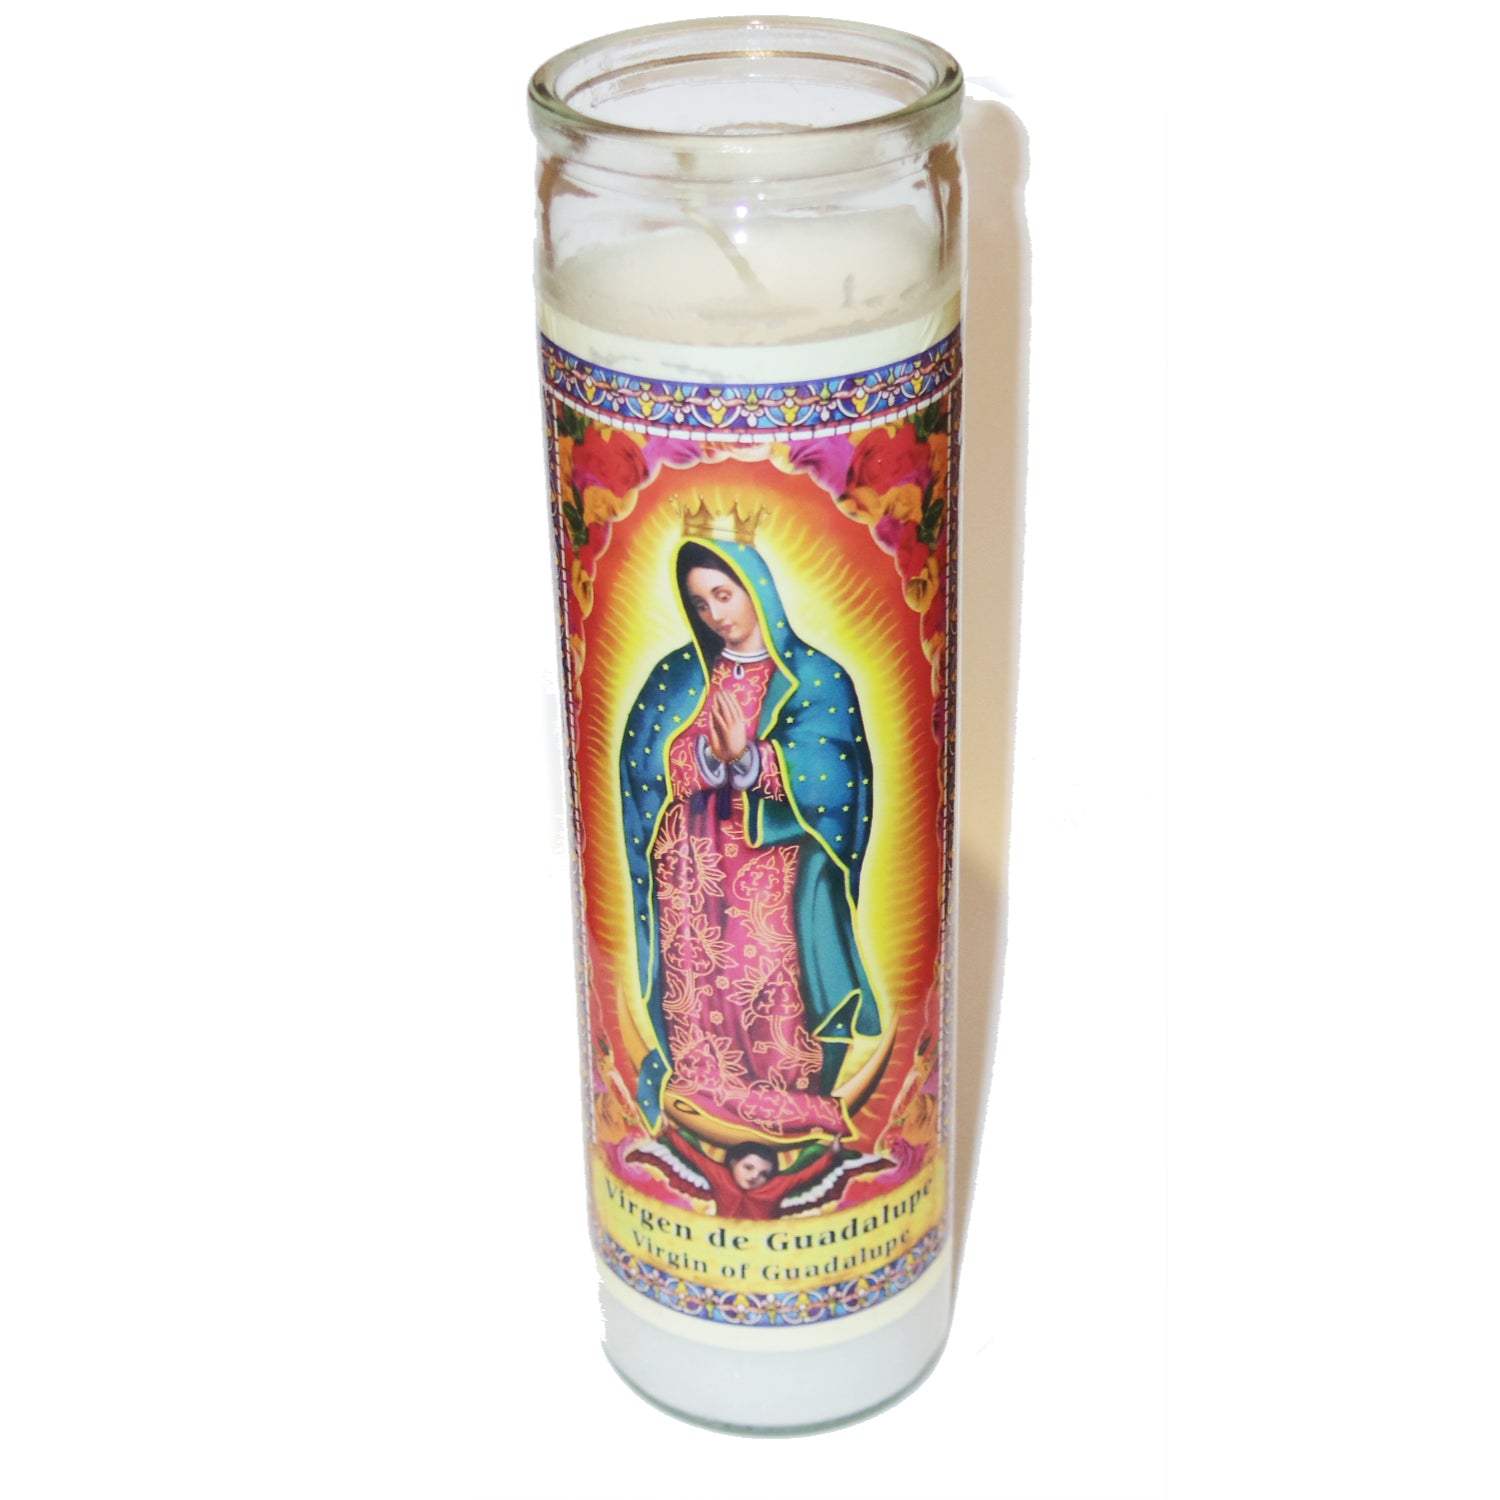 Virgen de Guadalupe candle